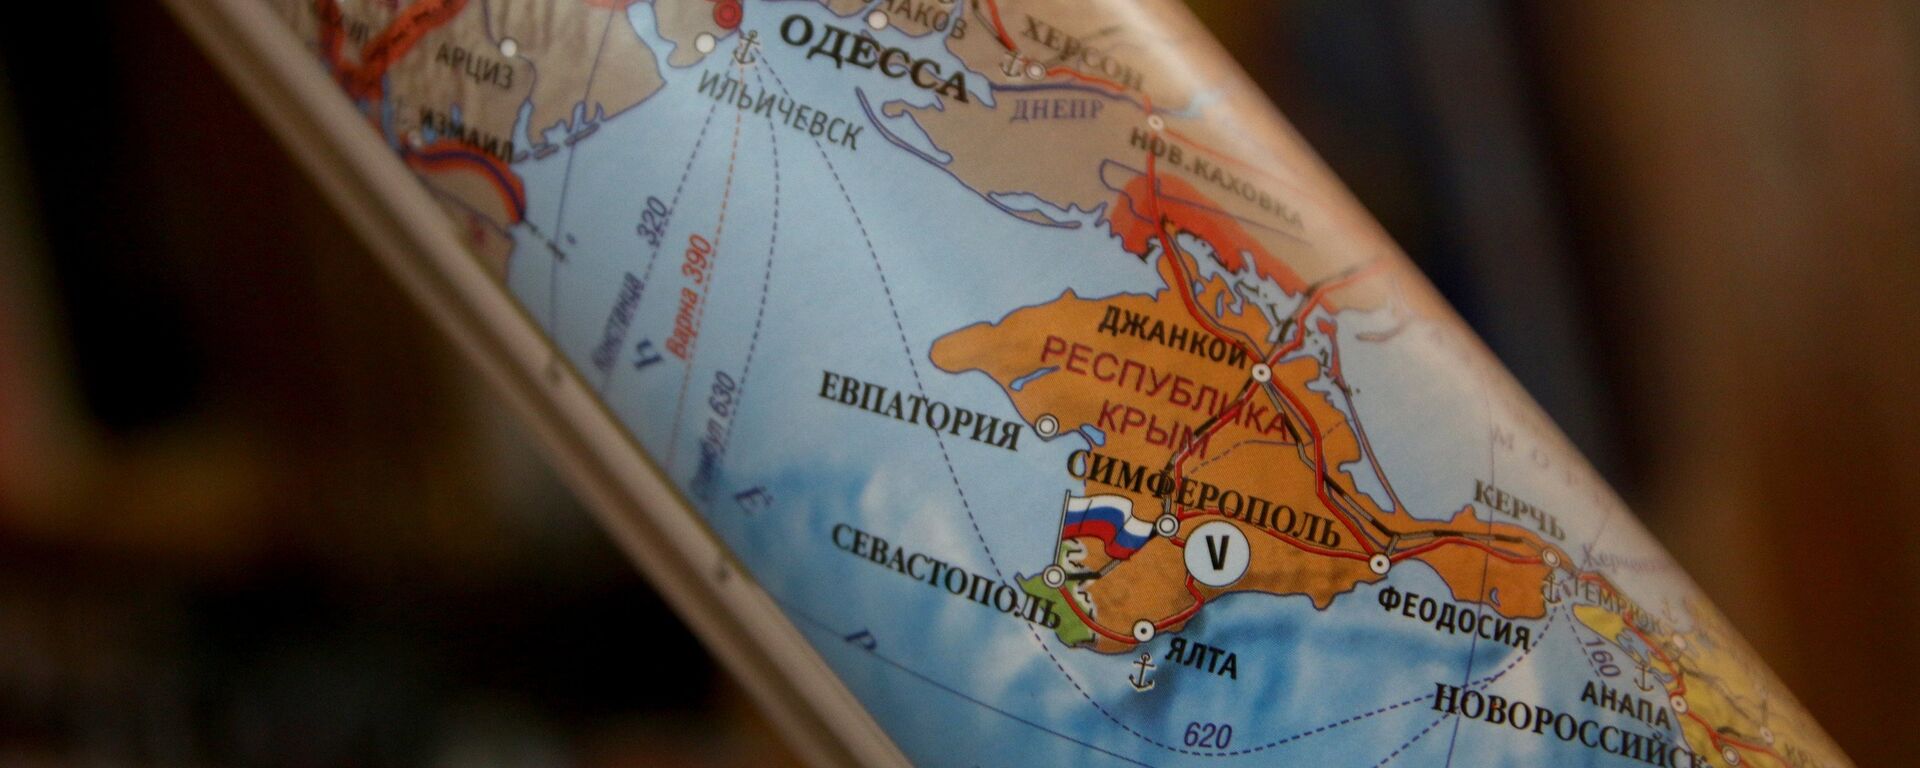 Politička mapa koja prikazuje Krim kao sastavni deo Rusije - Sputnik Srbija, 1920, 12.12.2021